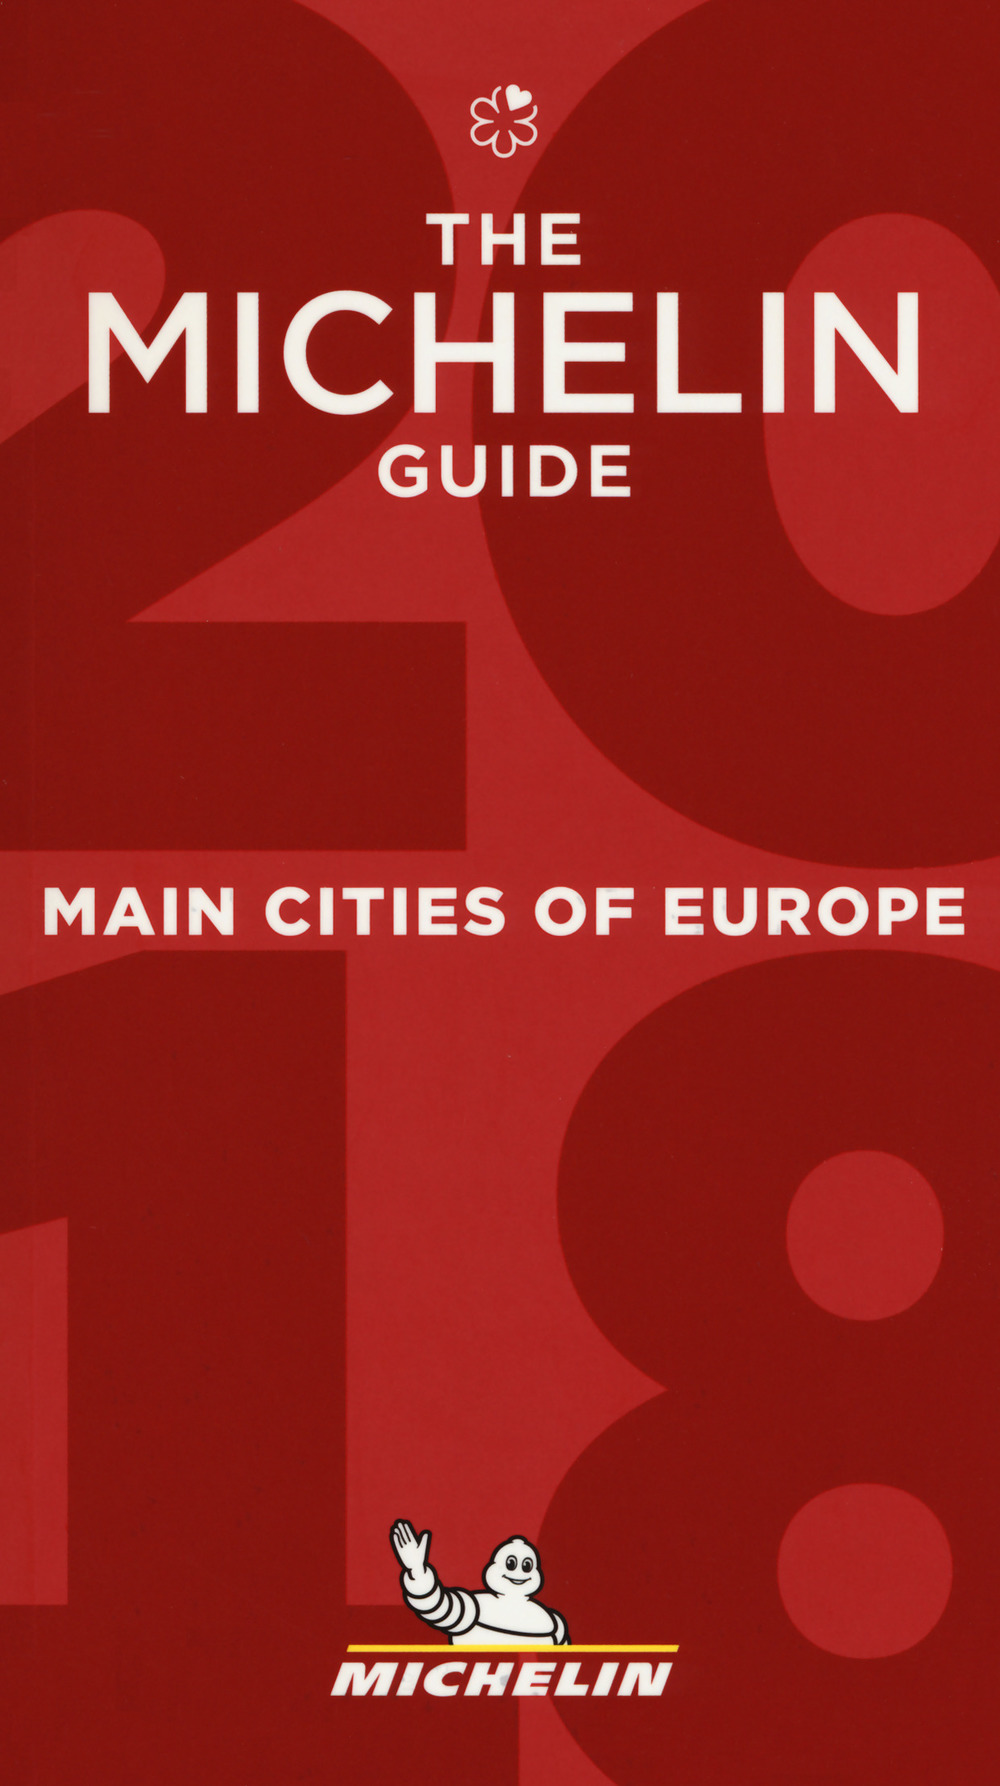 Main cities of Europe 2018